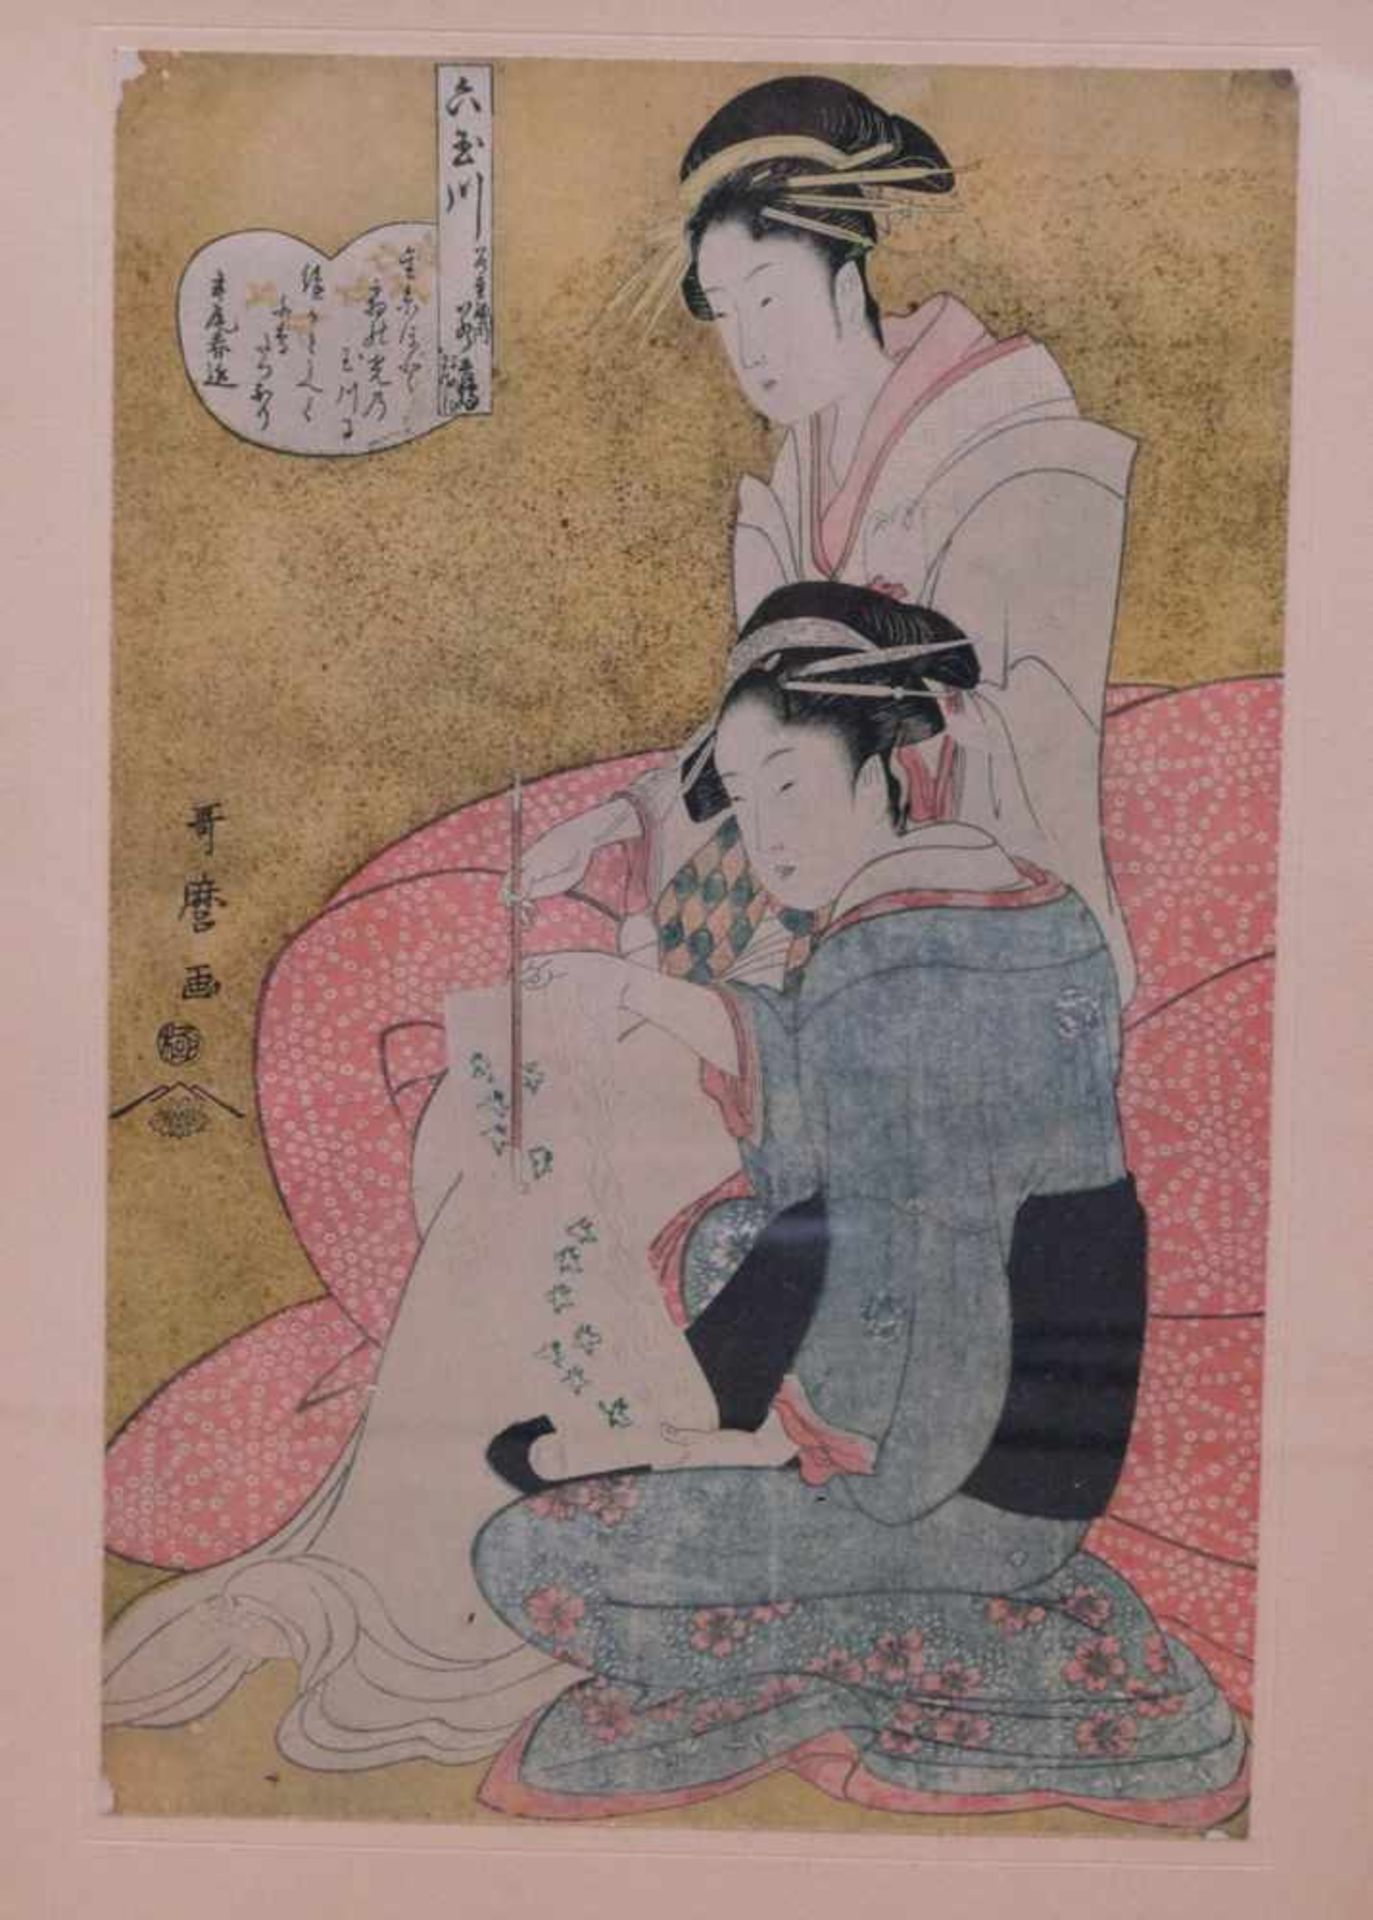 3 japanische ukiyo-e Holzdrucke 19. Jhd.Interieurdarstellungen mit jungen Mädchen beim Zeitvertreib. - Bild 3 aus 8